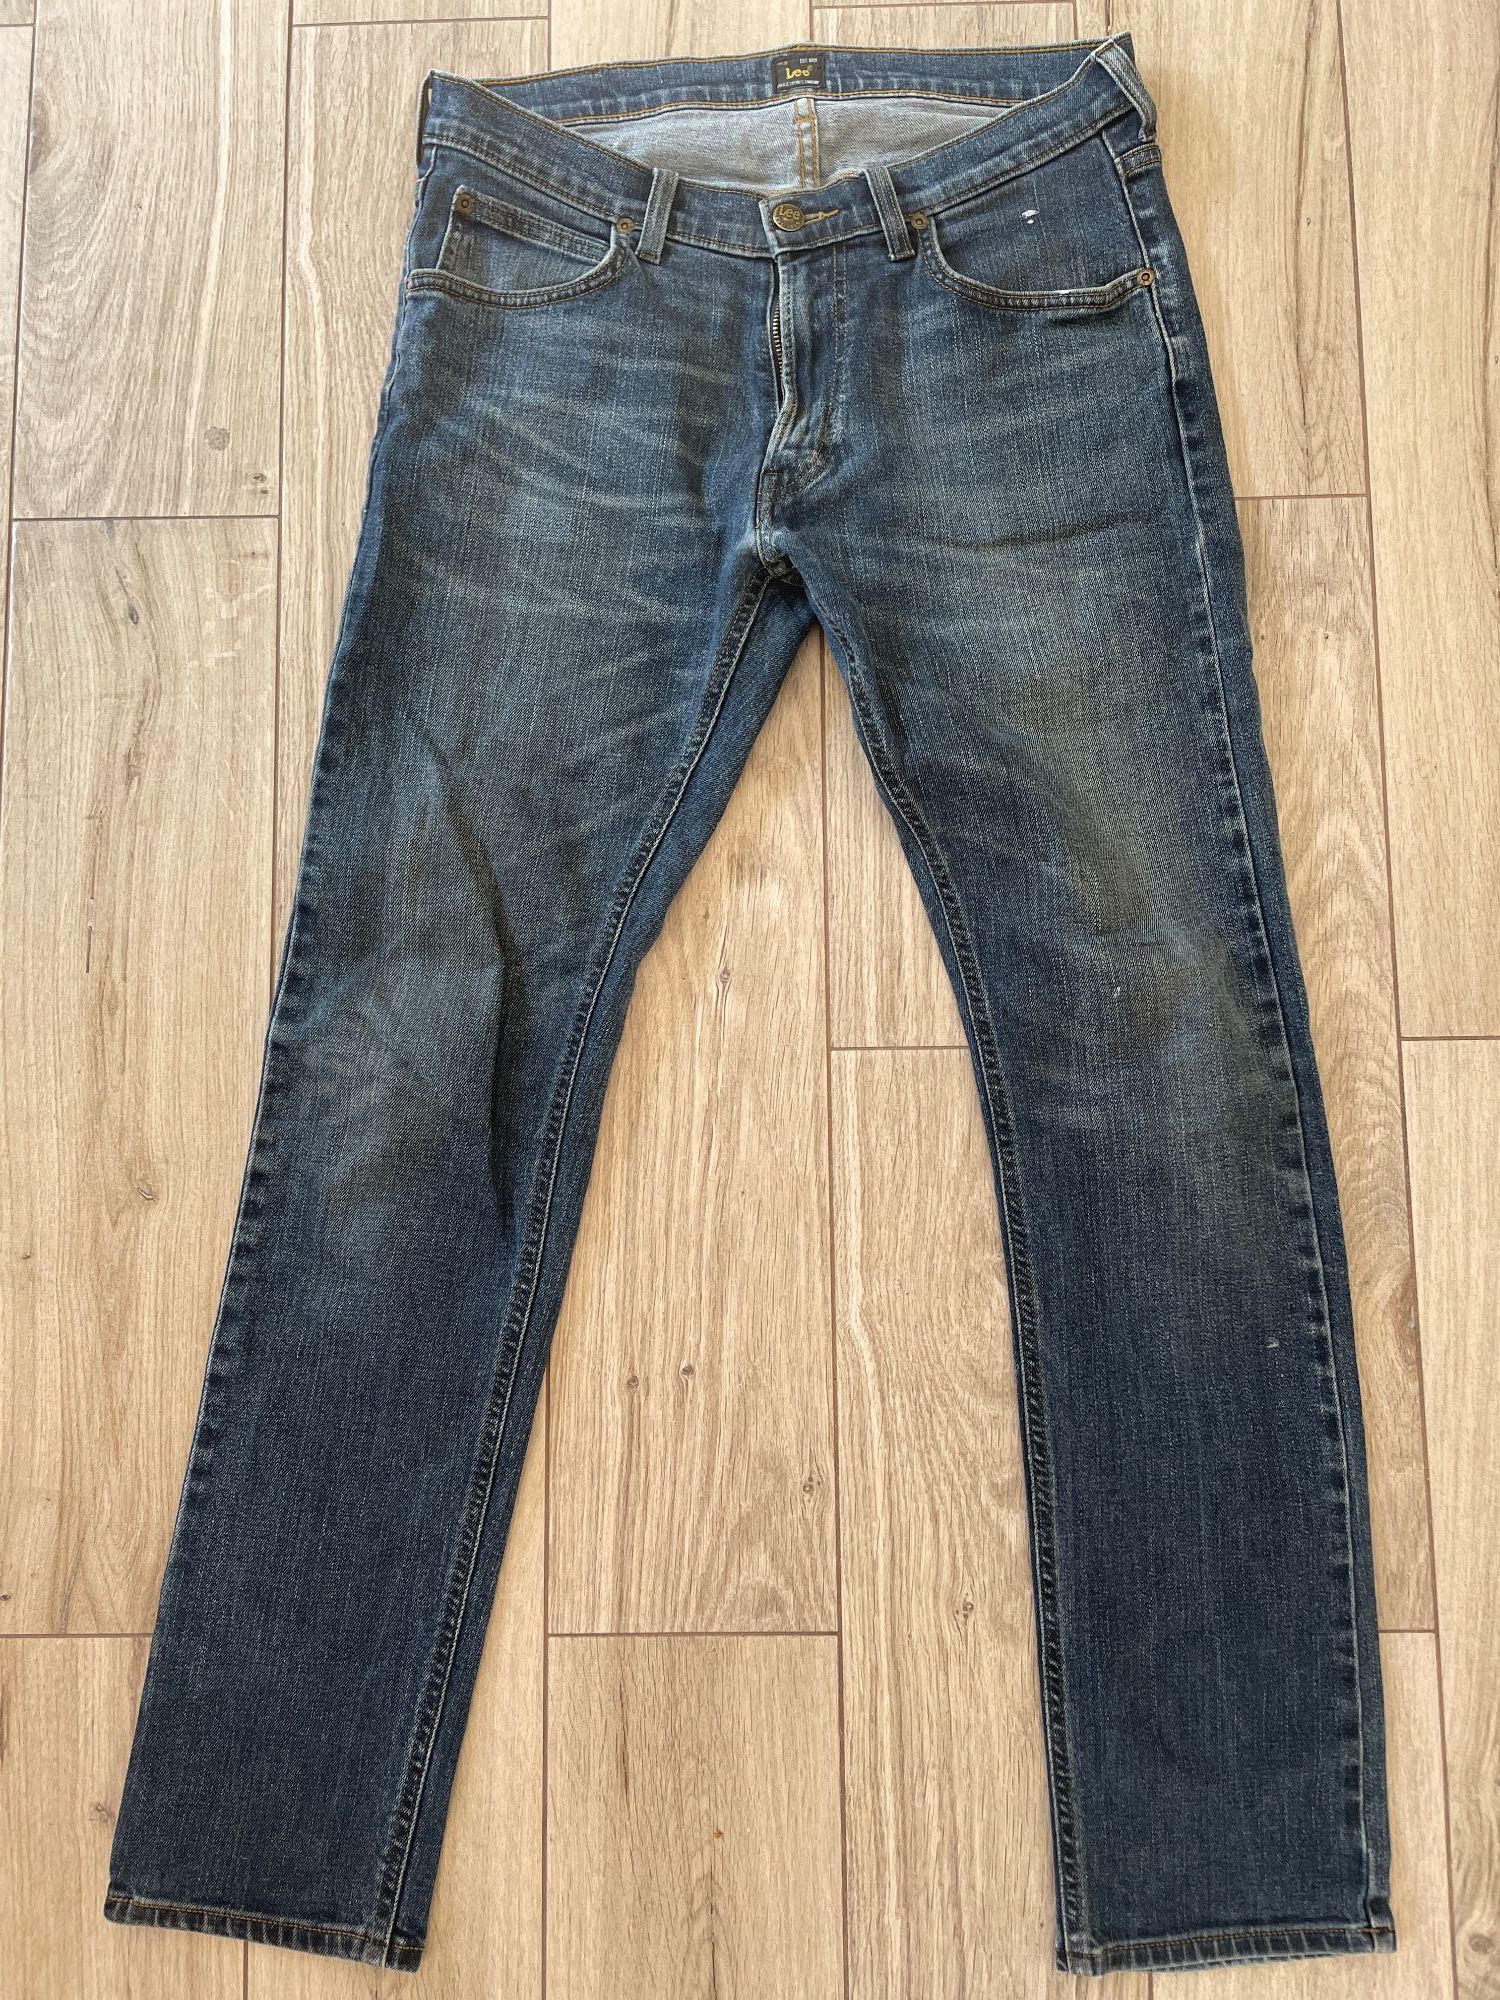 Spodnie jeans Lee 32/32 LUKE